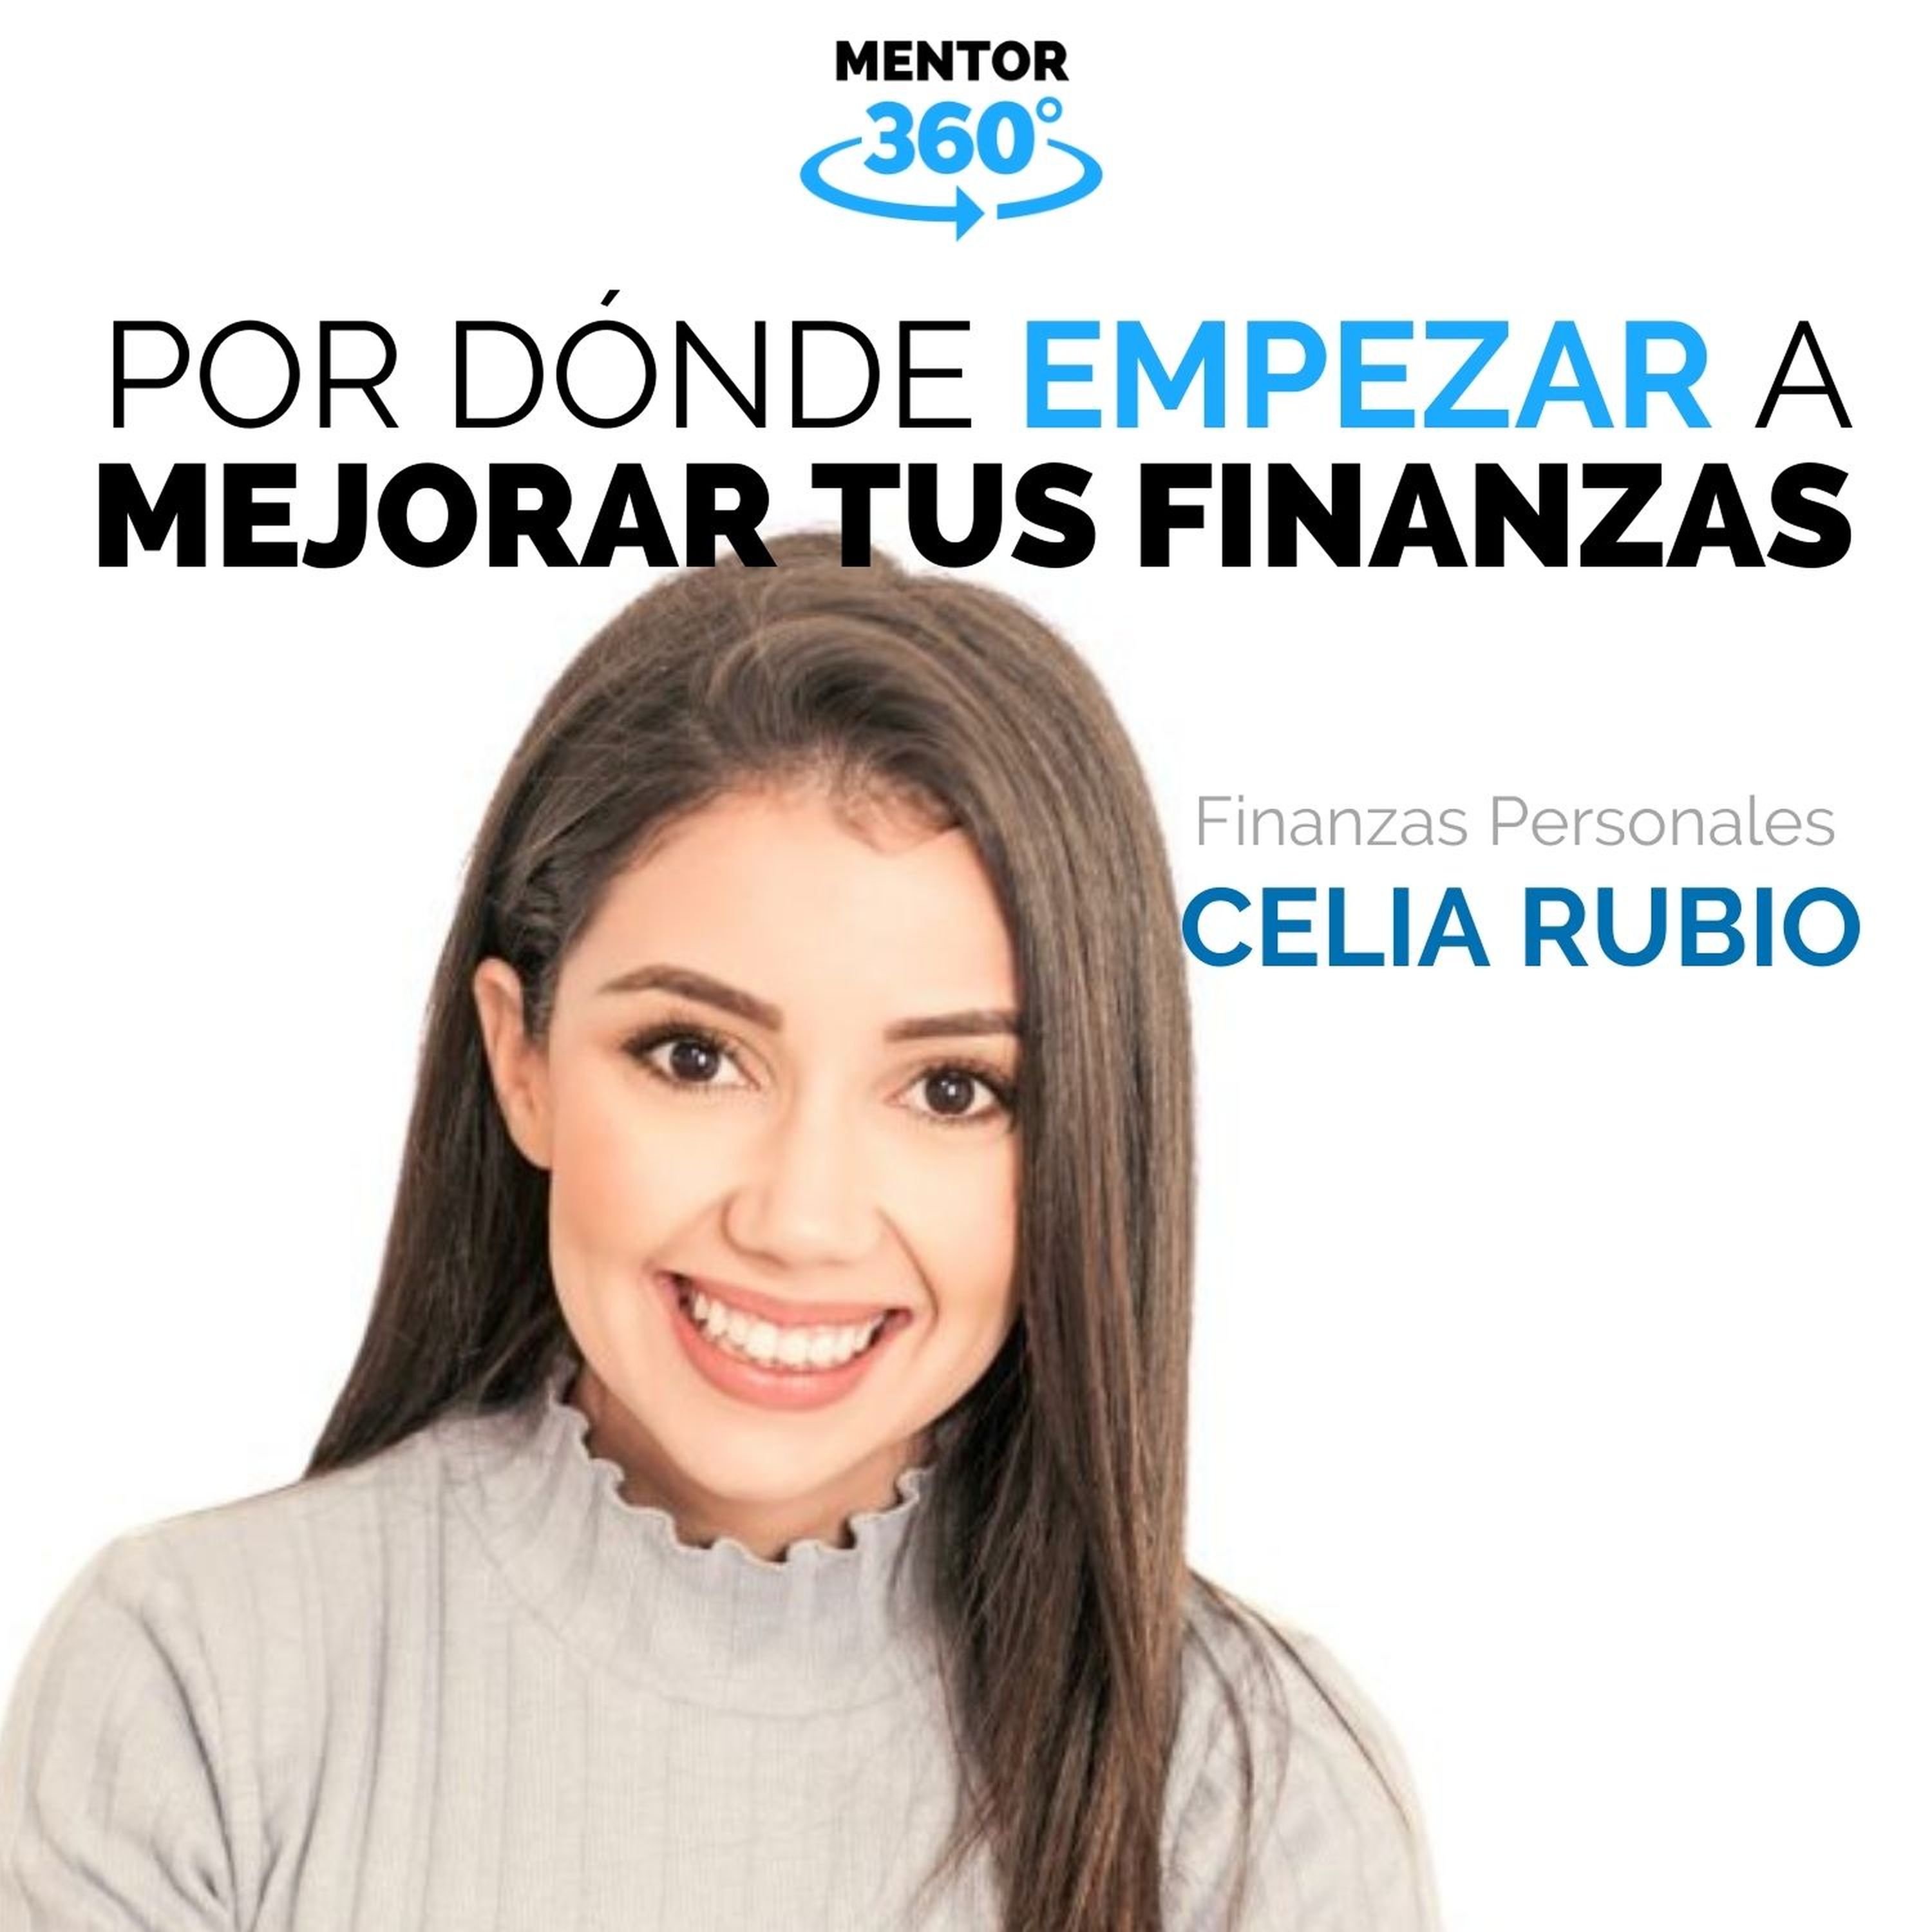 5 Pasos Para Organizar Nuestras Finanzas Celia Rubio Finanzas Personales Mentor360 9448